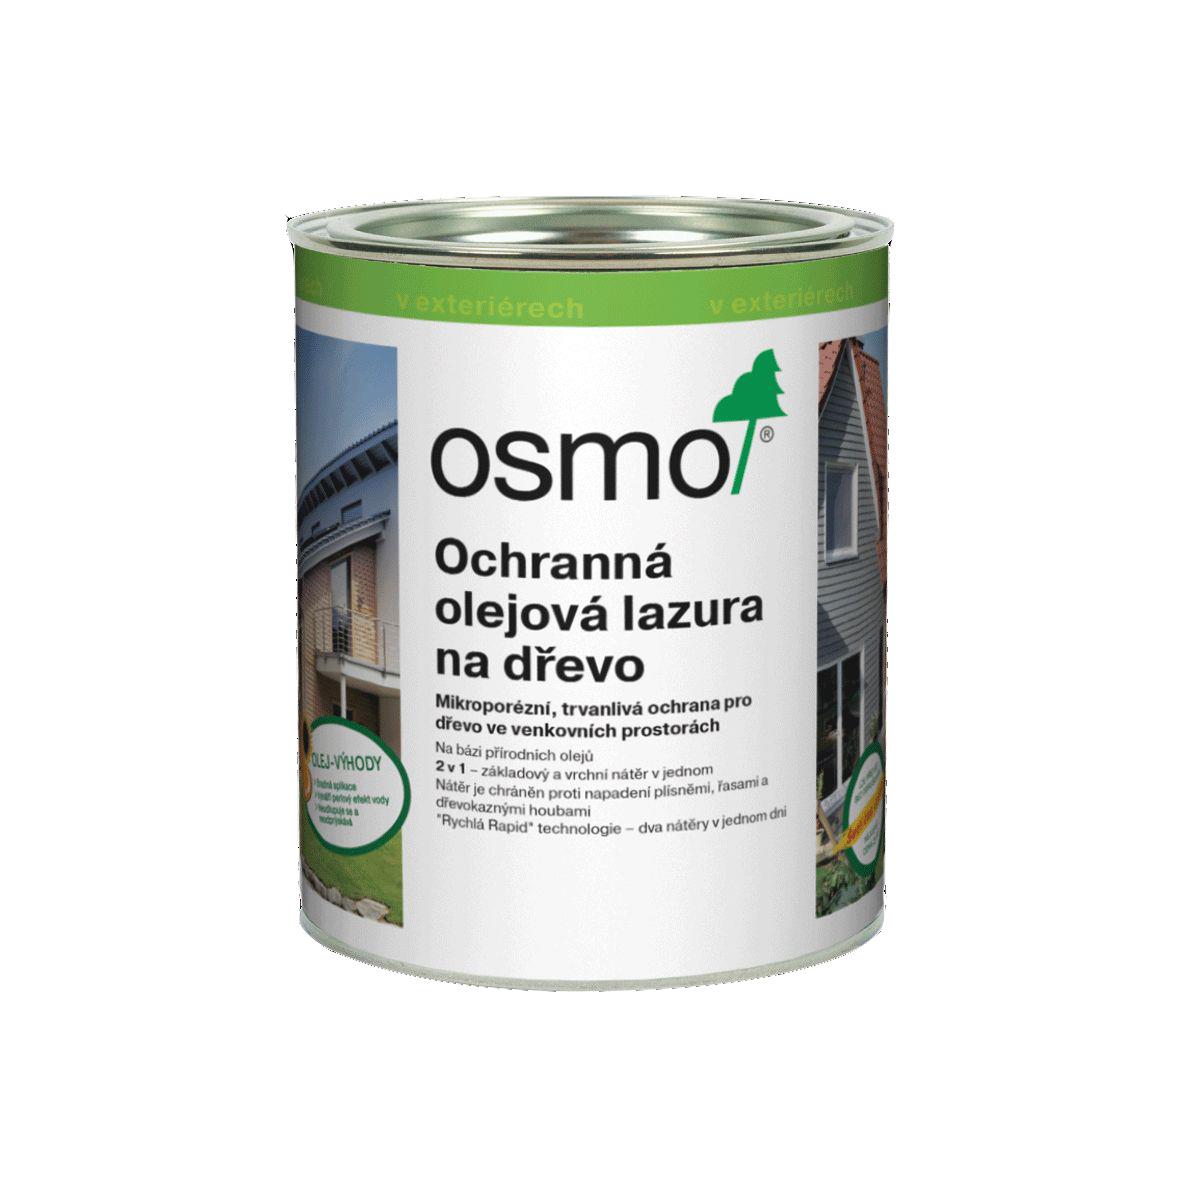 OSMO Ochranná olejová lazura 900 bílá 0,75l